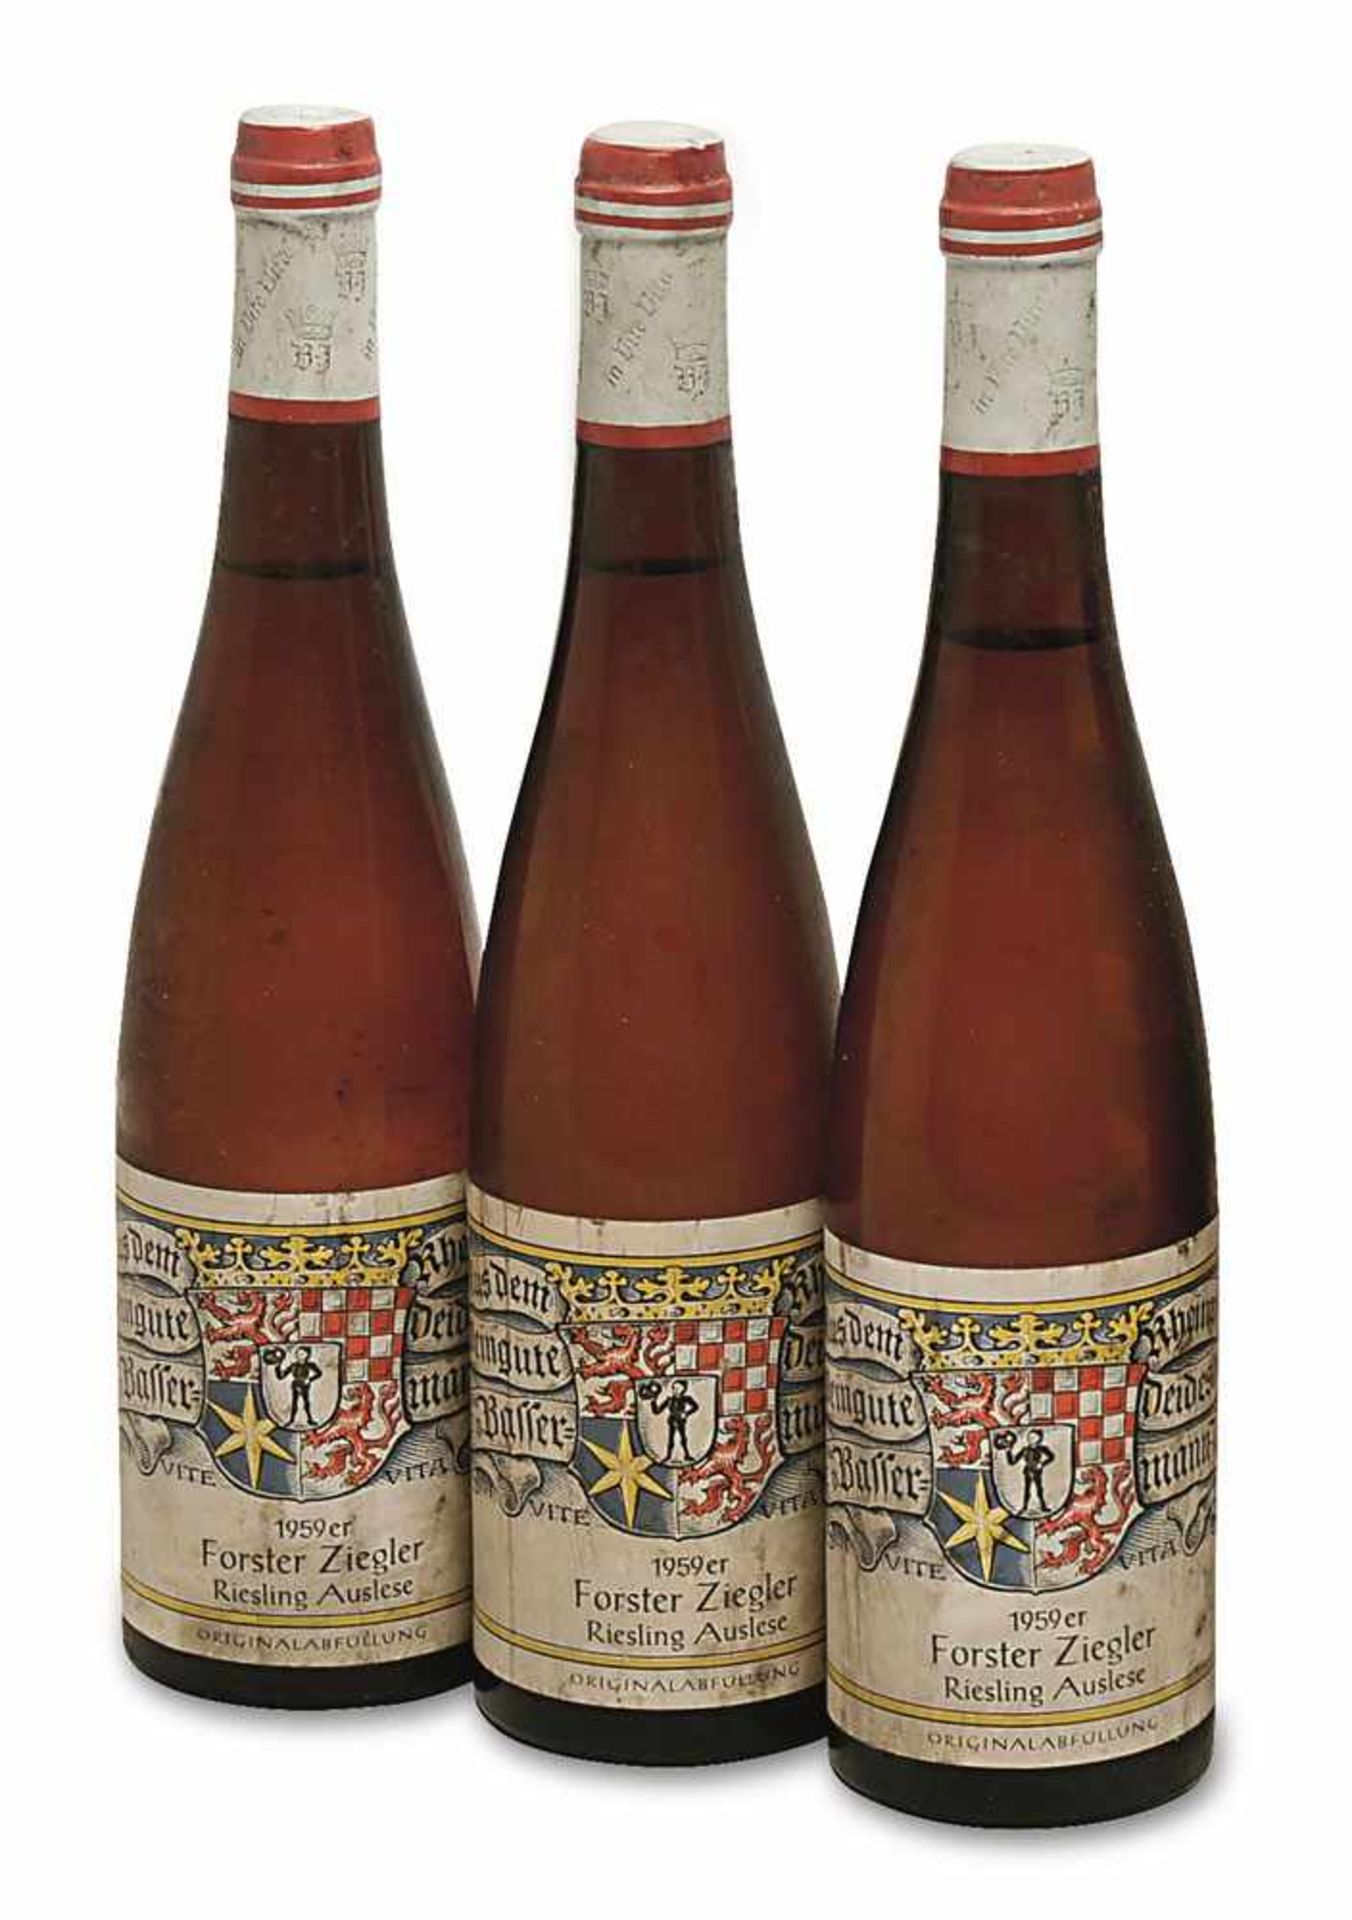 Sechs Flaschen Forster Ziegler Riesling Auslese Rheinpfalz, Deutschland Weingut Dr. von Bassermann-